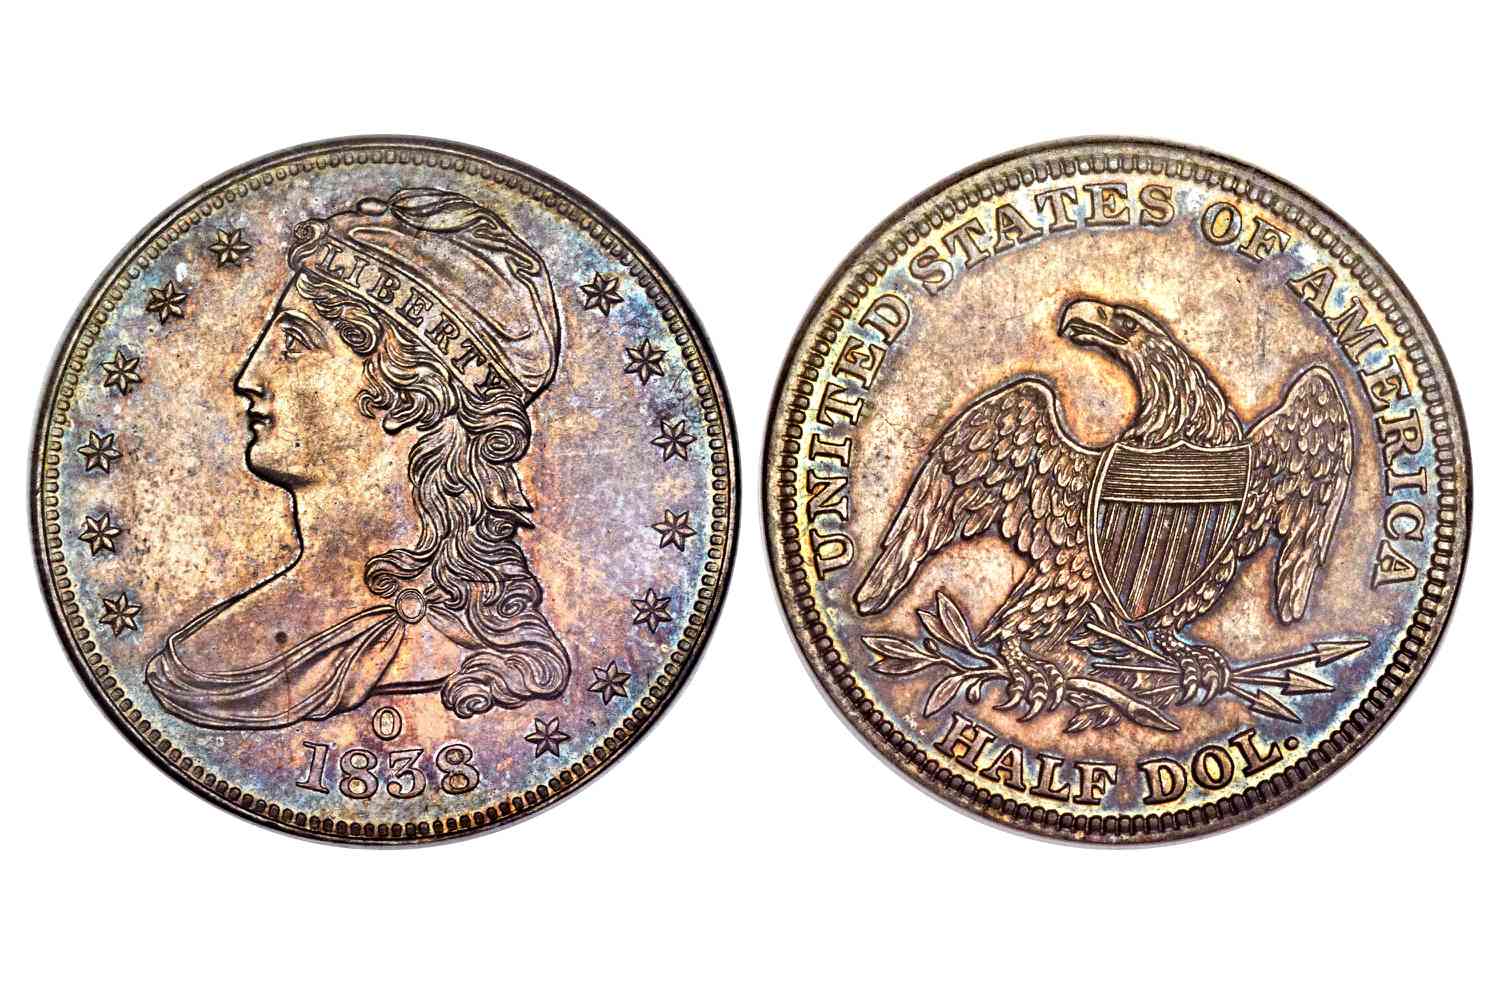 1838-O证明盖半身像半美元